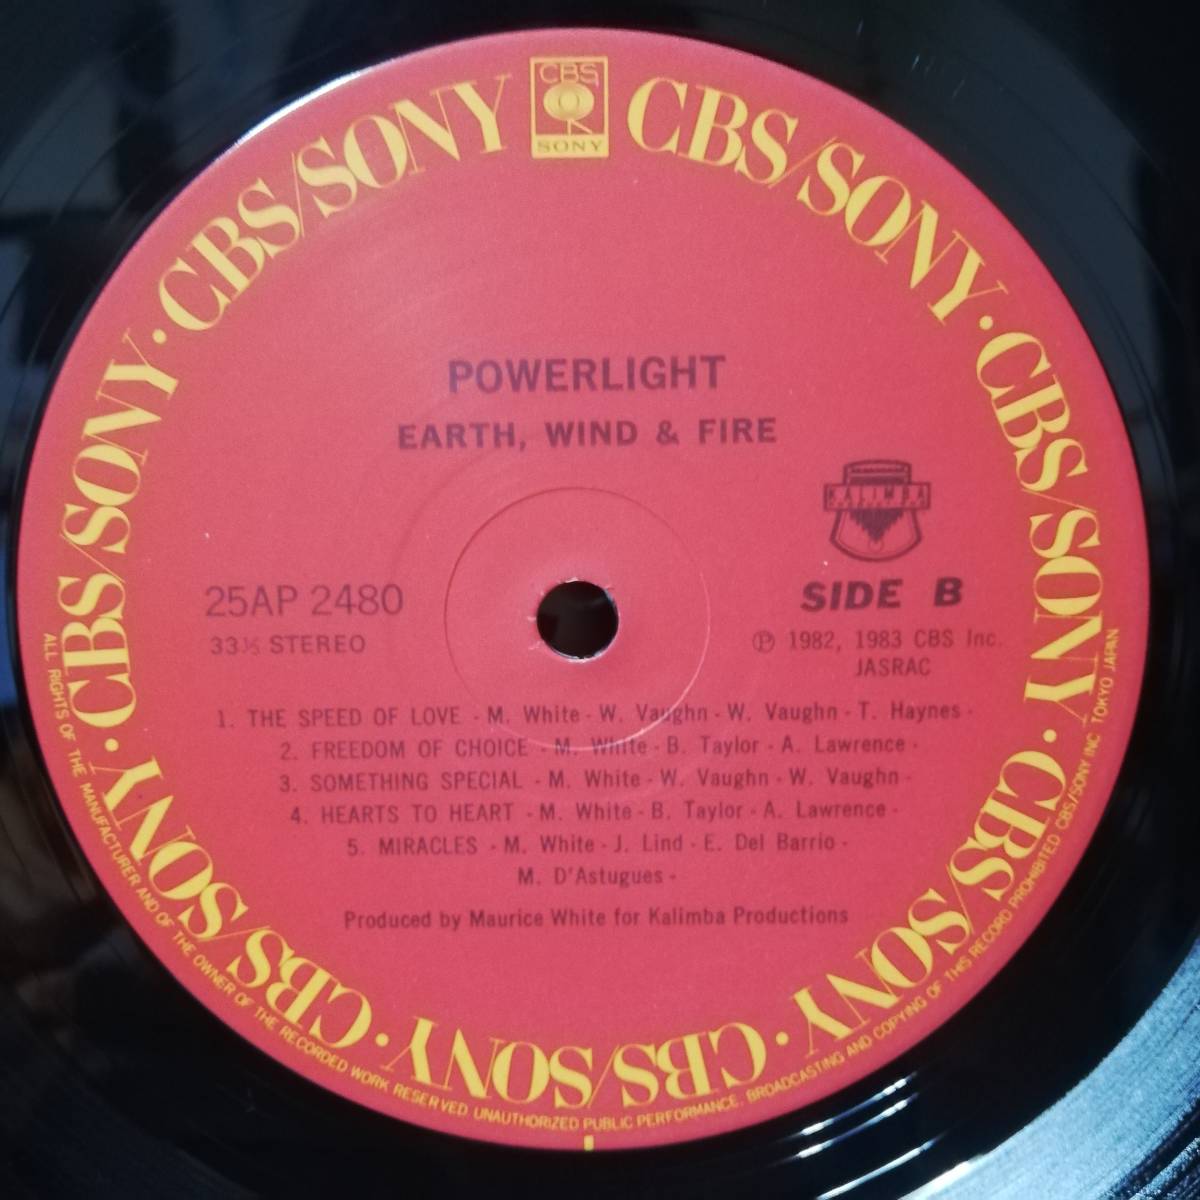 【LP】EARTH, WIND & FIRE - POWERLIGHT - CBS - 25AP 2480 - JP盤 - 1983年 - *30_画像4